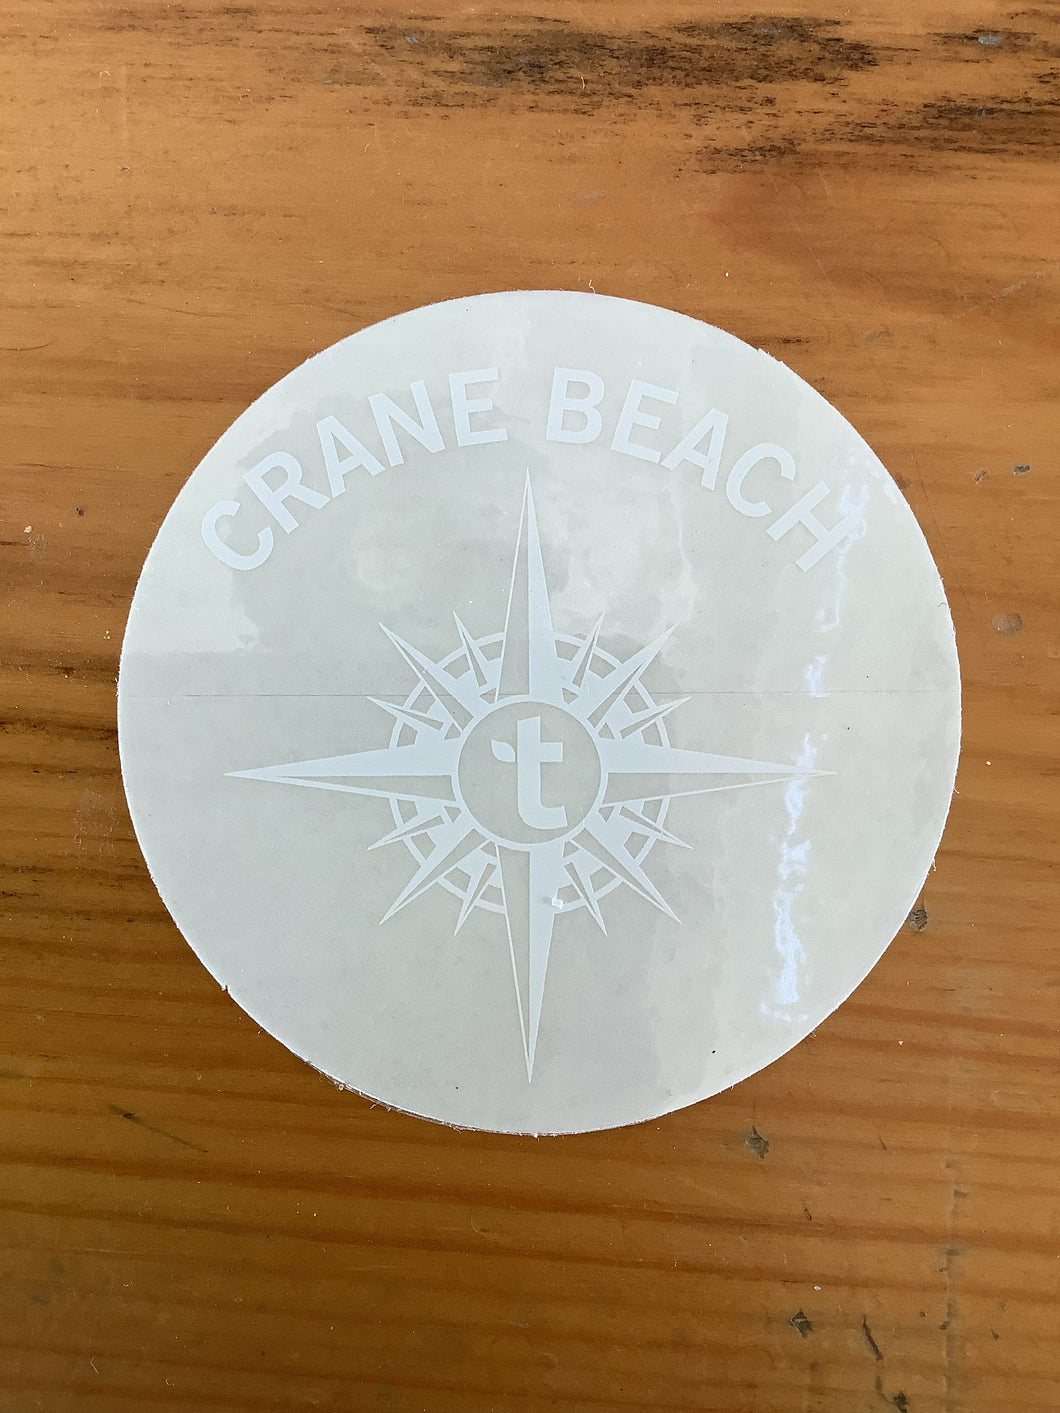 Crane Beach Car Decal